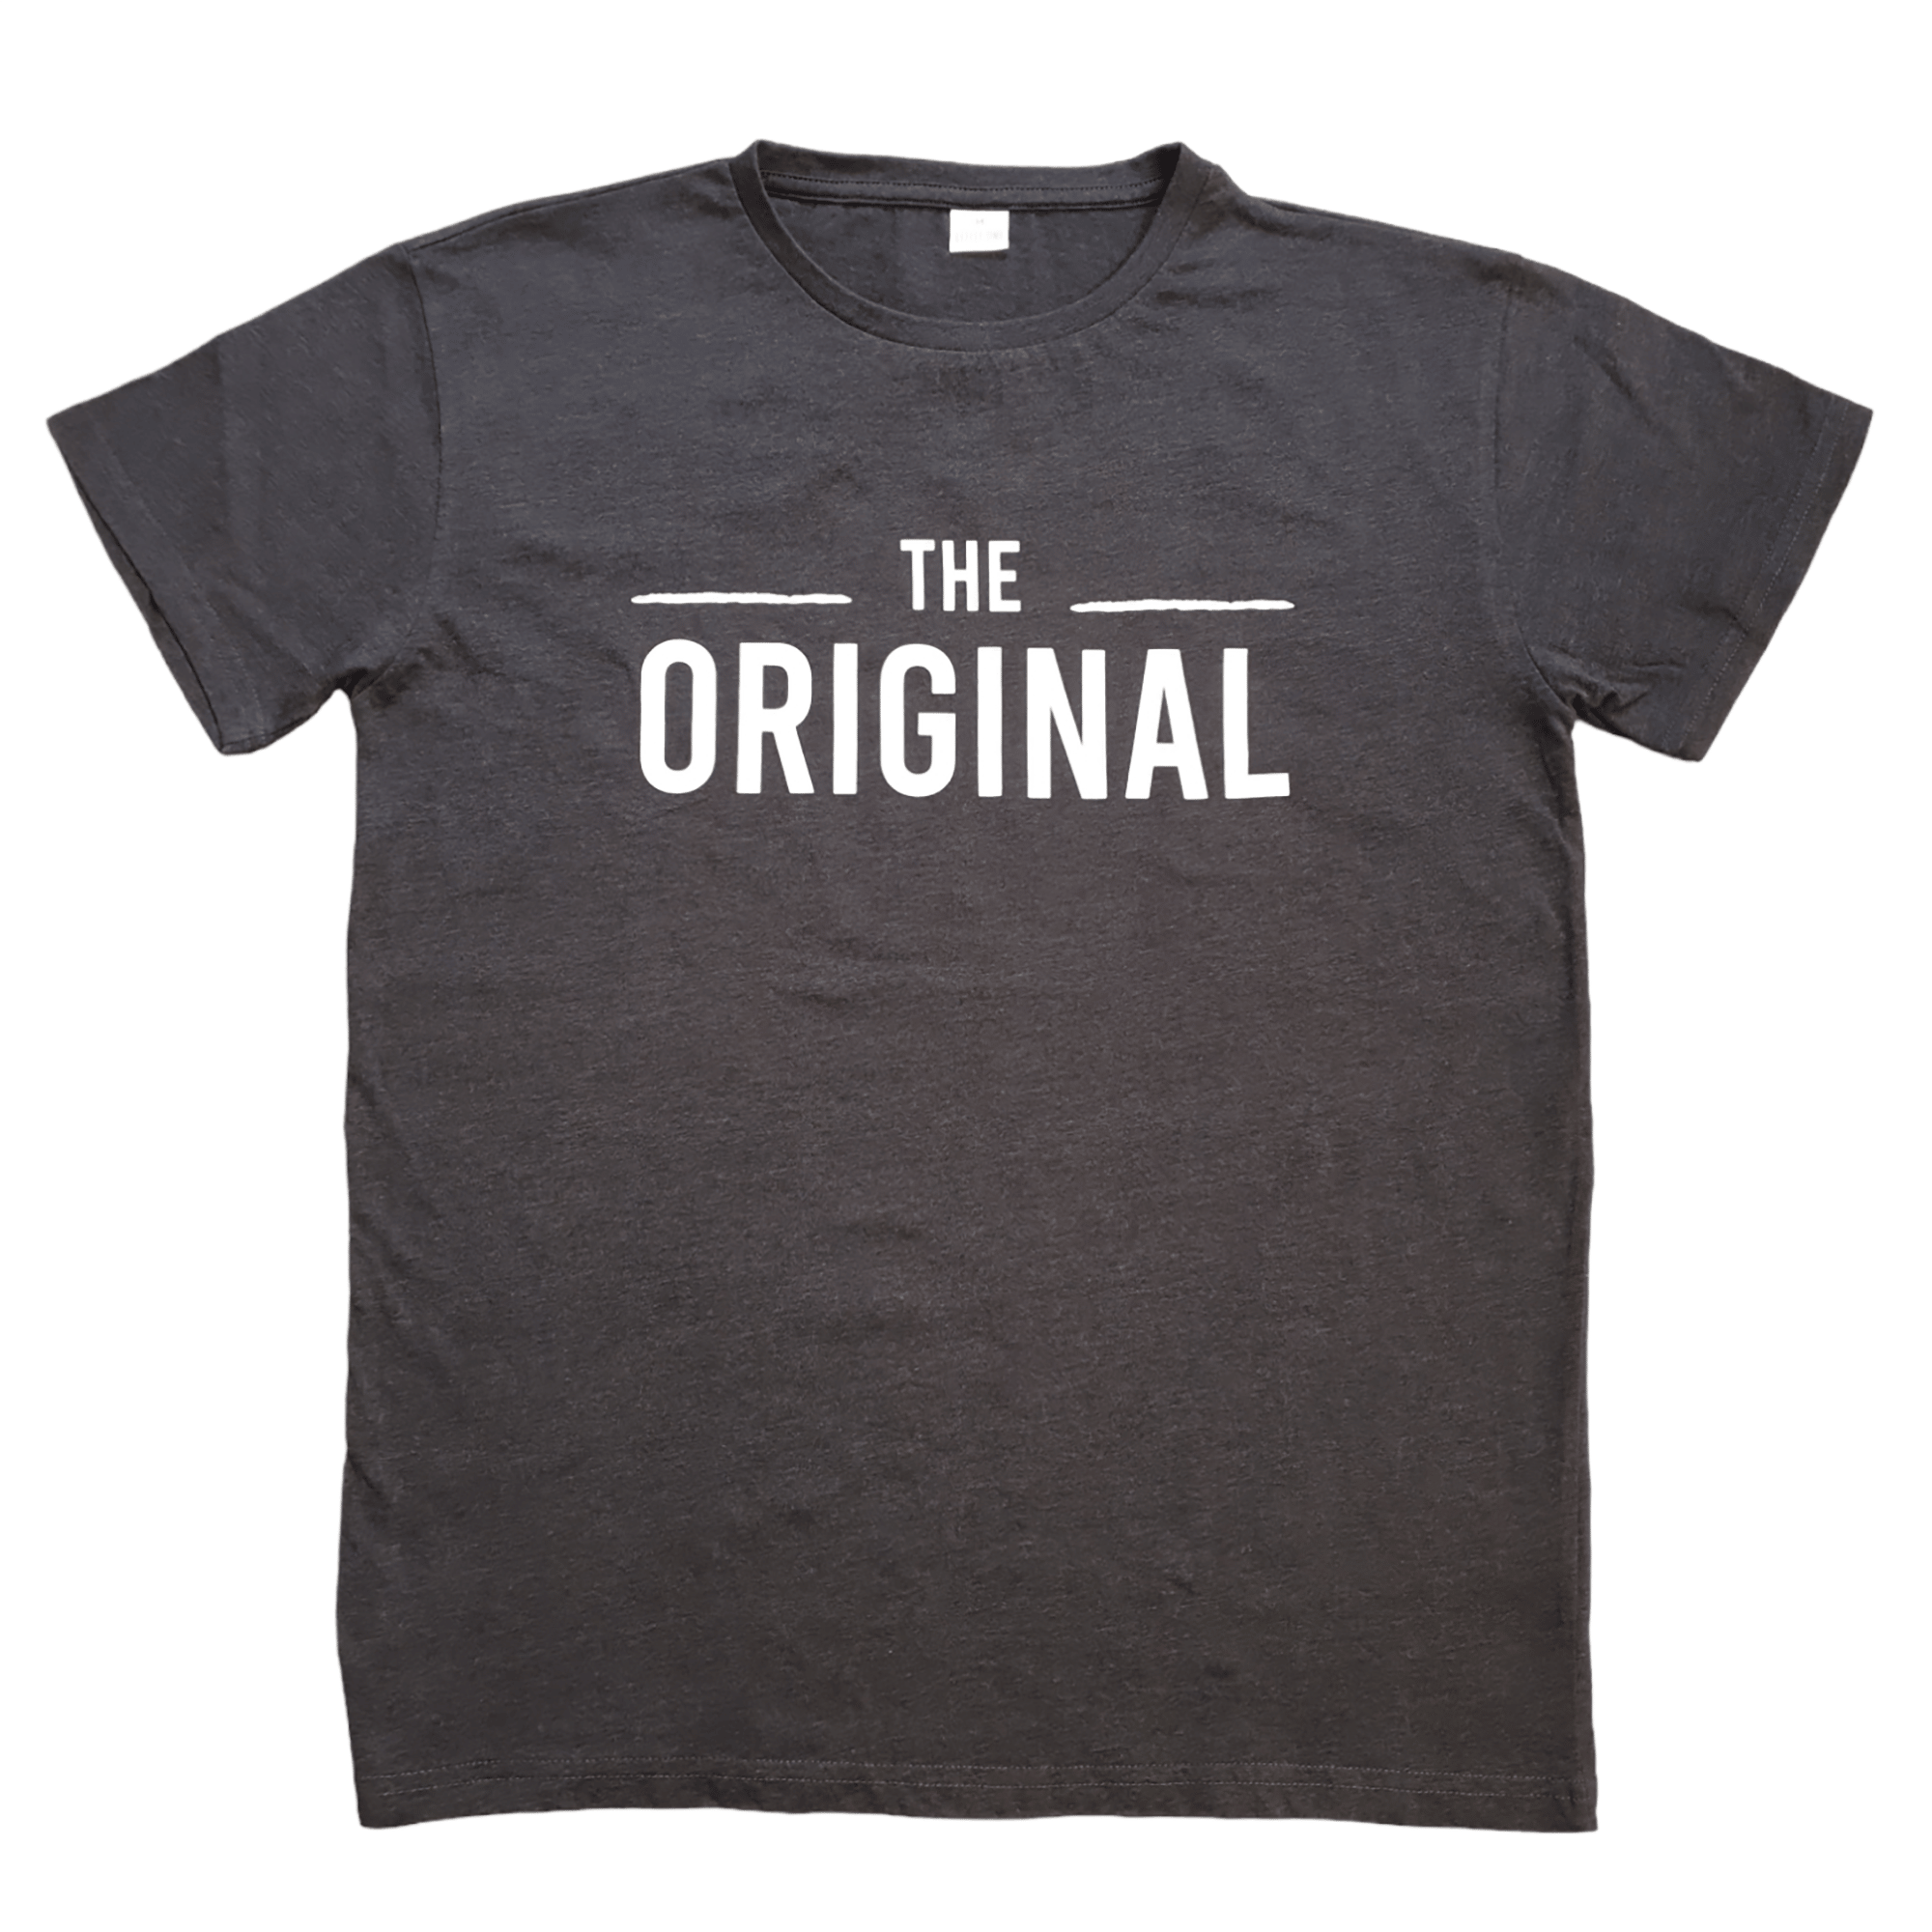 T-Shirt "The Original" LITTLE ONE Dunkelgrau M2000584432806 1